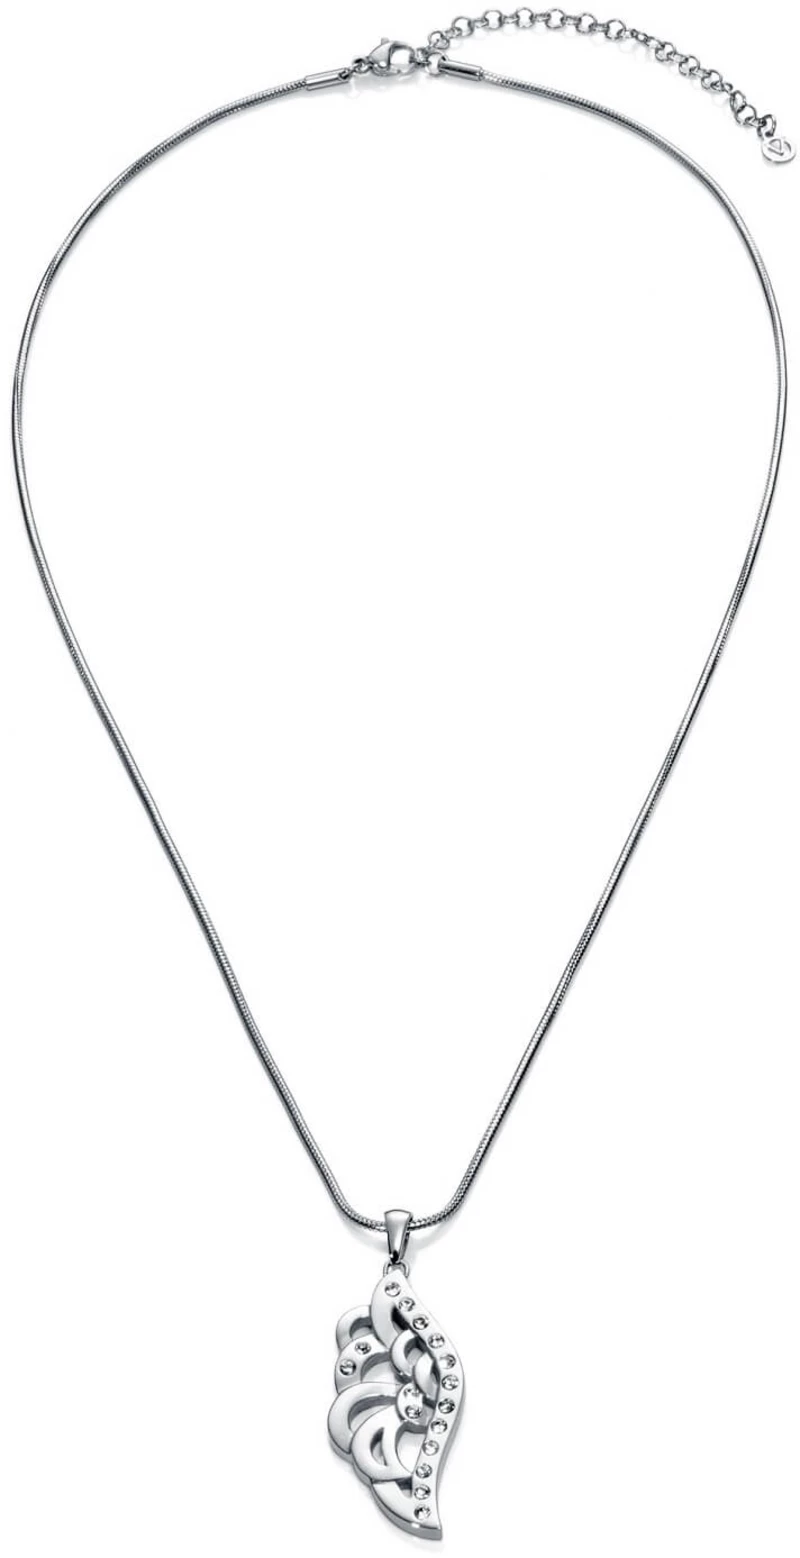 Viceroy Módní ocelový náhrdelník s přívěskem Kiss 80011C11000